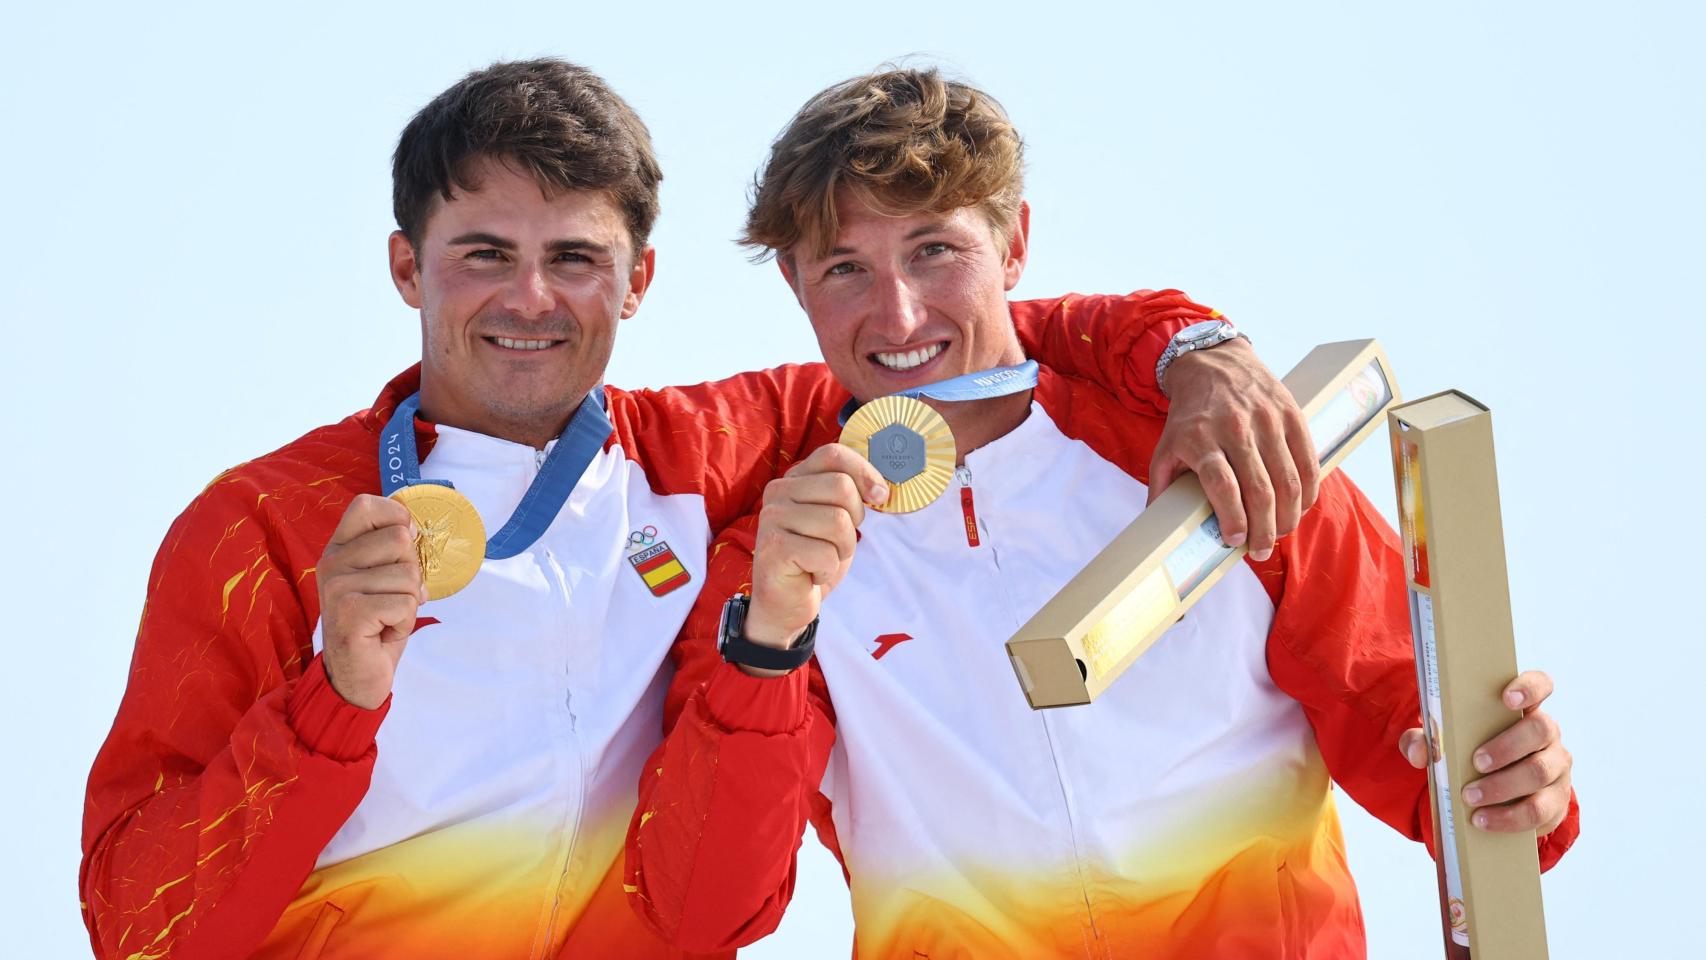 Florian Trittel Paul y Diego Botín, ganadores del oro en vela 49er